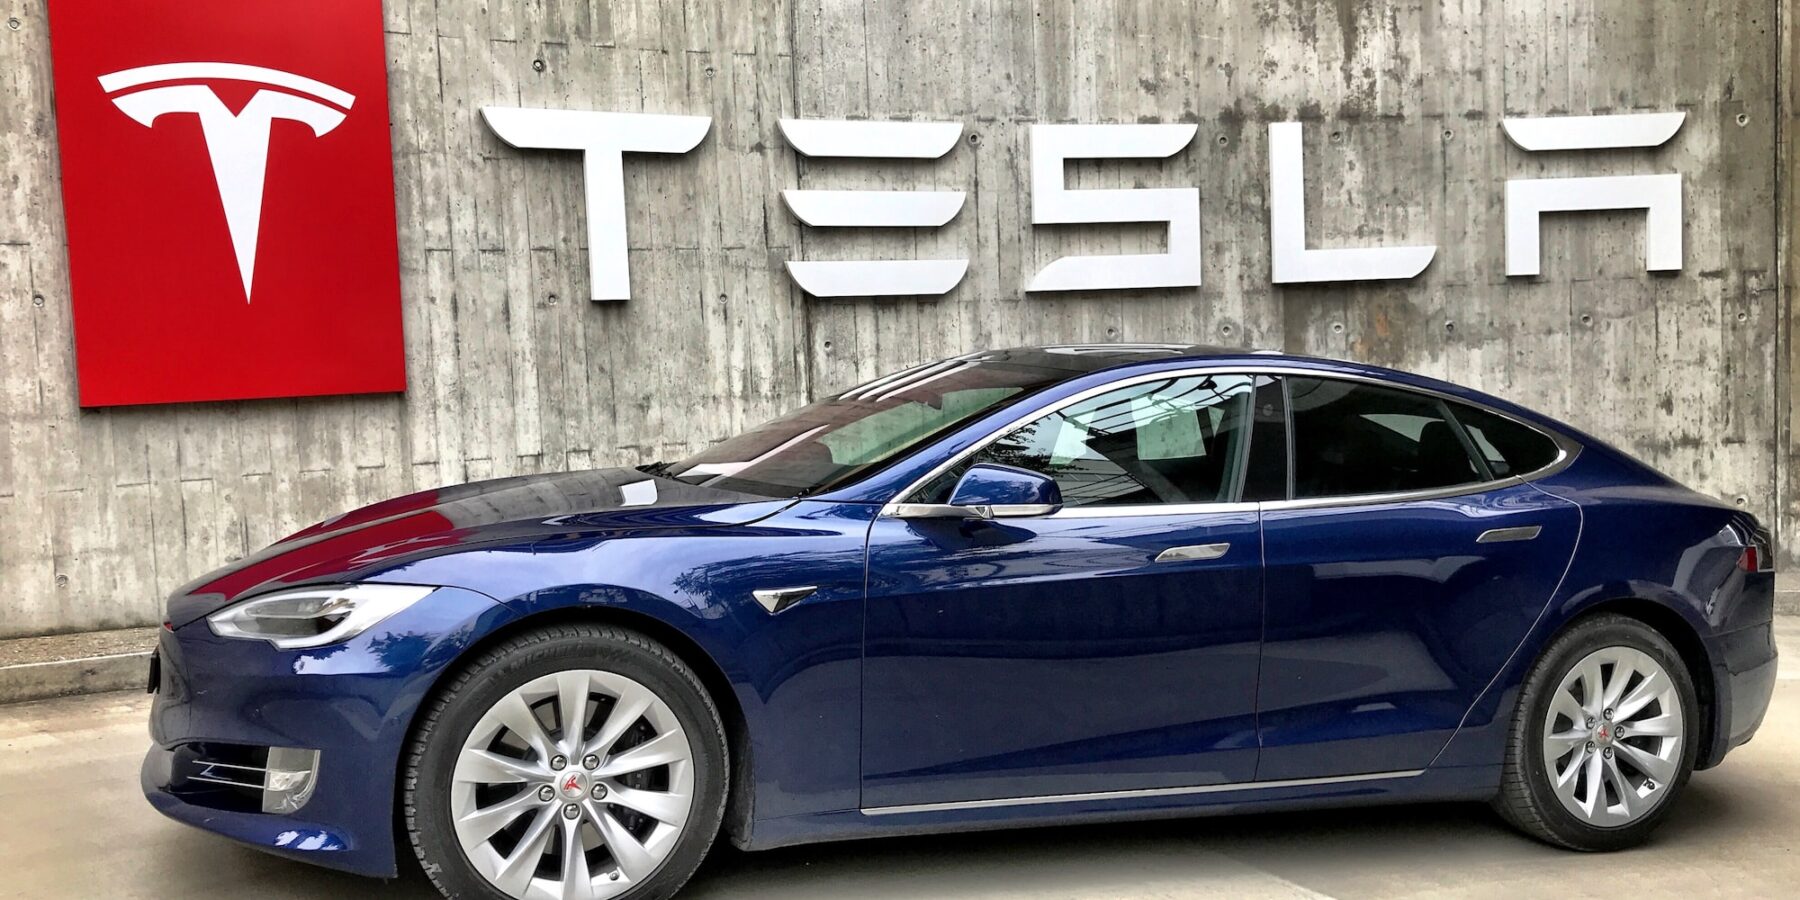 Autonomiczne samochody Tesla #automatyzacja #Elon Musk #sztuczna inteligencja #Tesla - ciekawostki.app